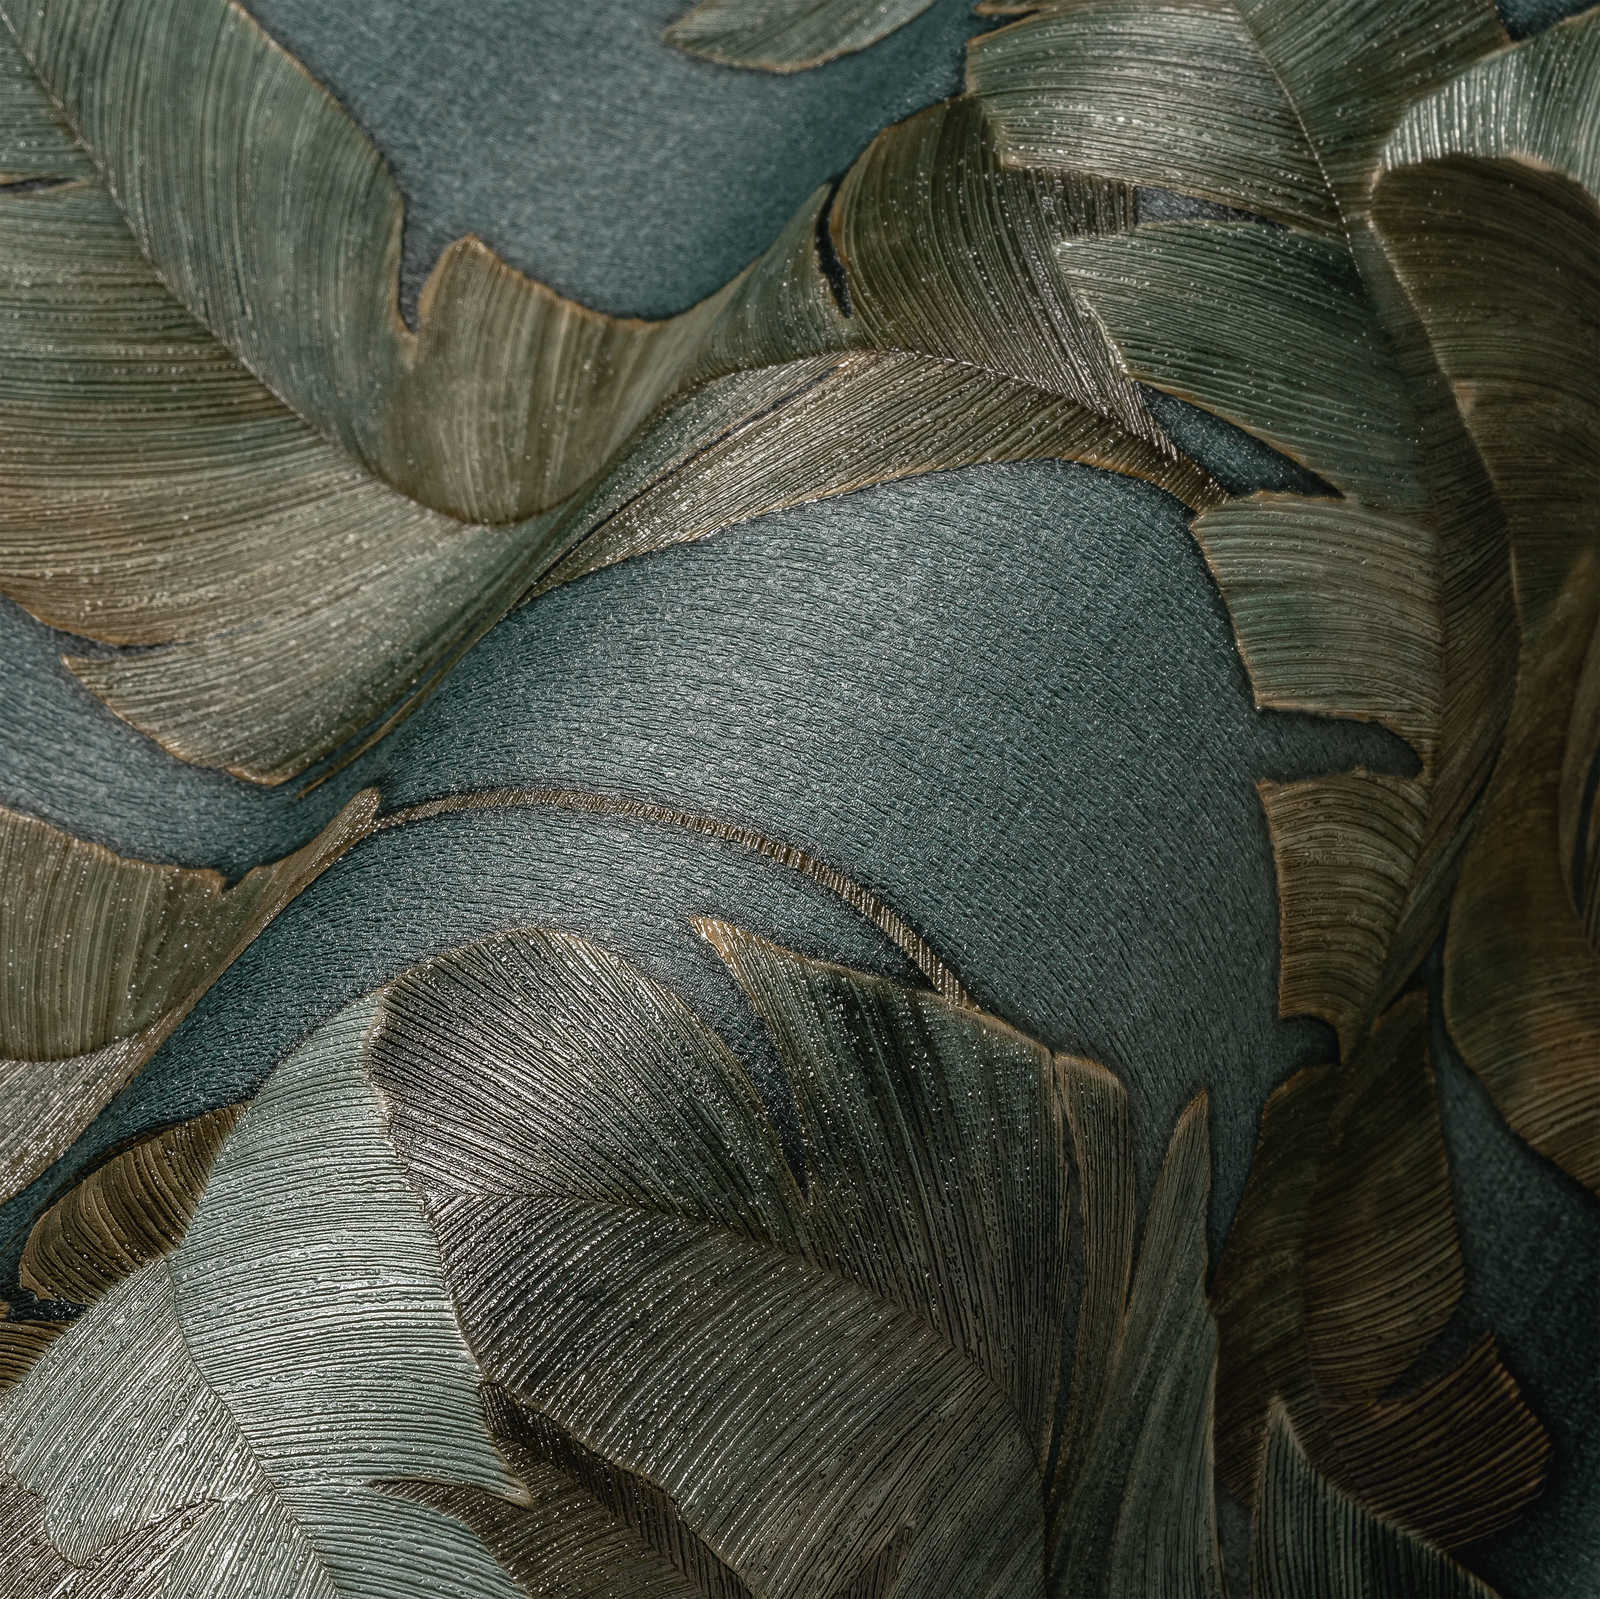             Carta da parati in tessuto non tessuto con grandi foglie di palma in colore scuro - petrolio, verde, marrone
        